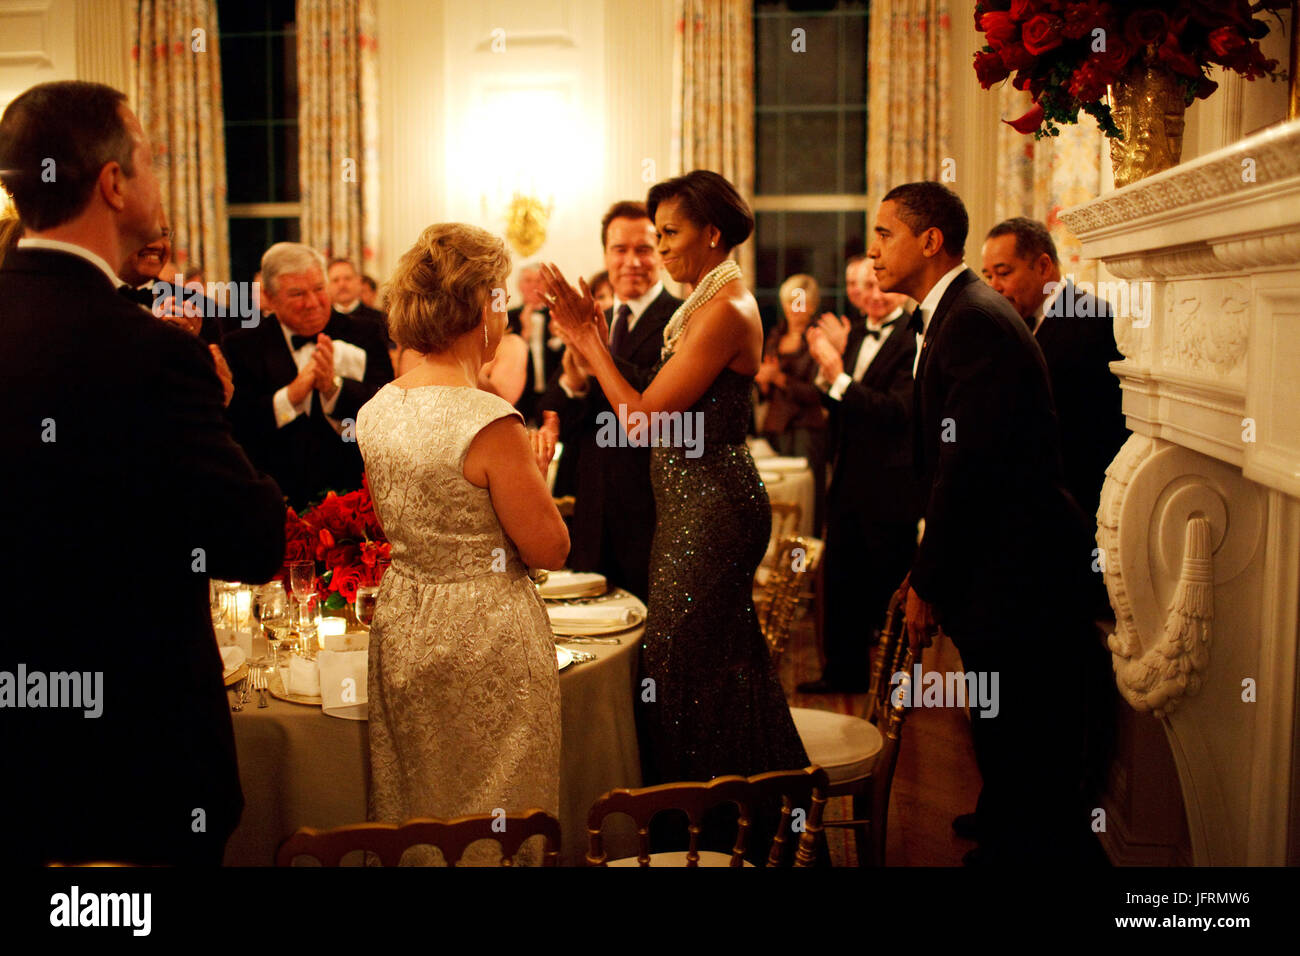 Le président Barack Obama sort de la présidence de la Première Dame Michelle Obama au Governors Ball dans la salle à manger d'État 22/02/09 Photo Officiel de la Maison Blanche par Pete Souza Banque D'Images